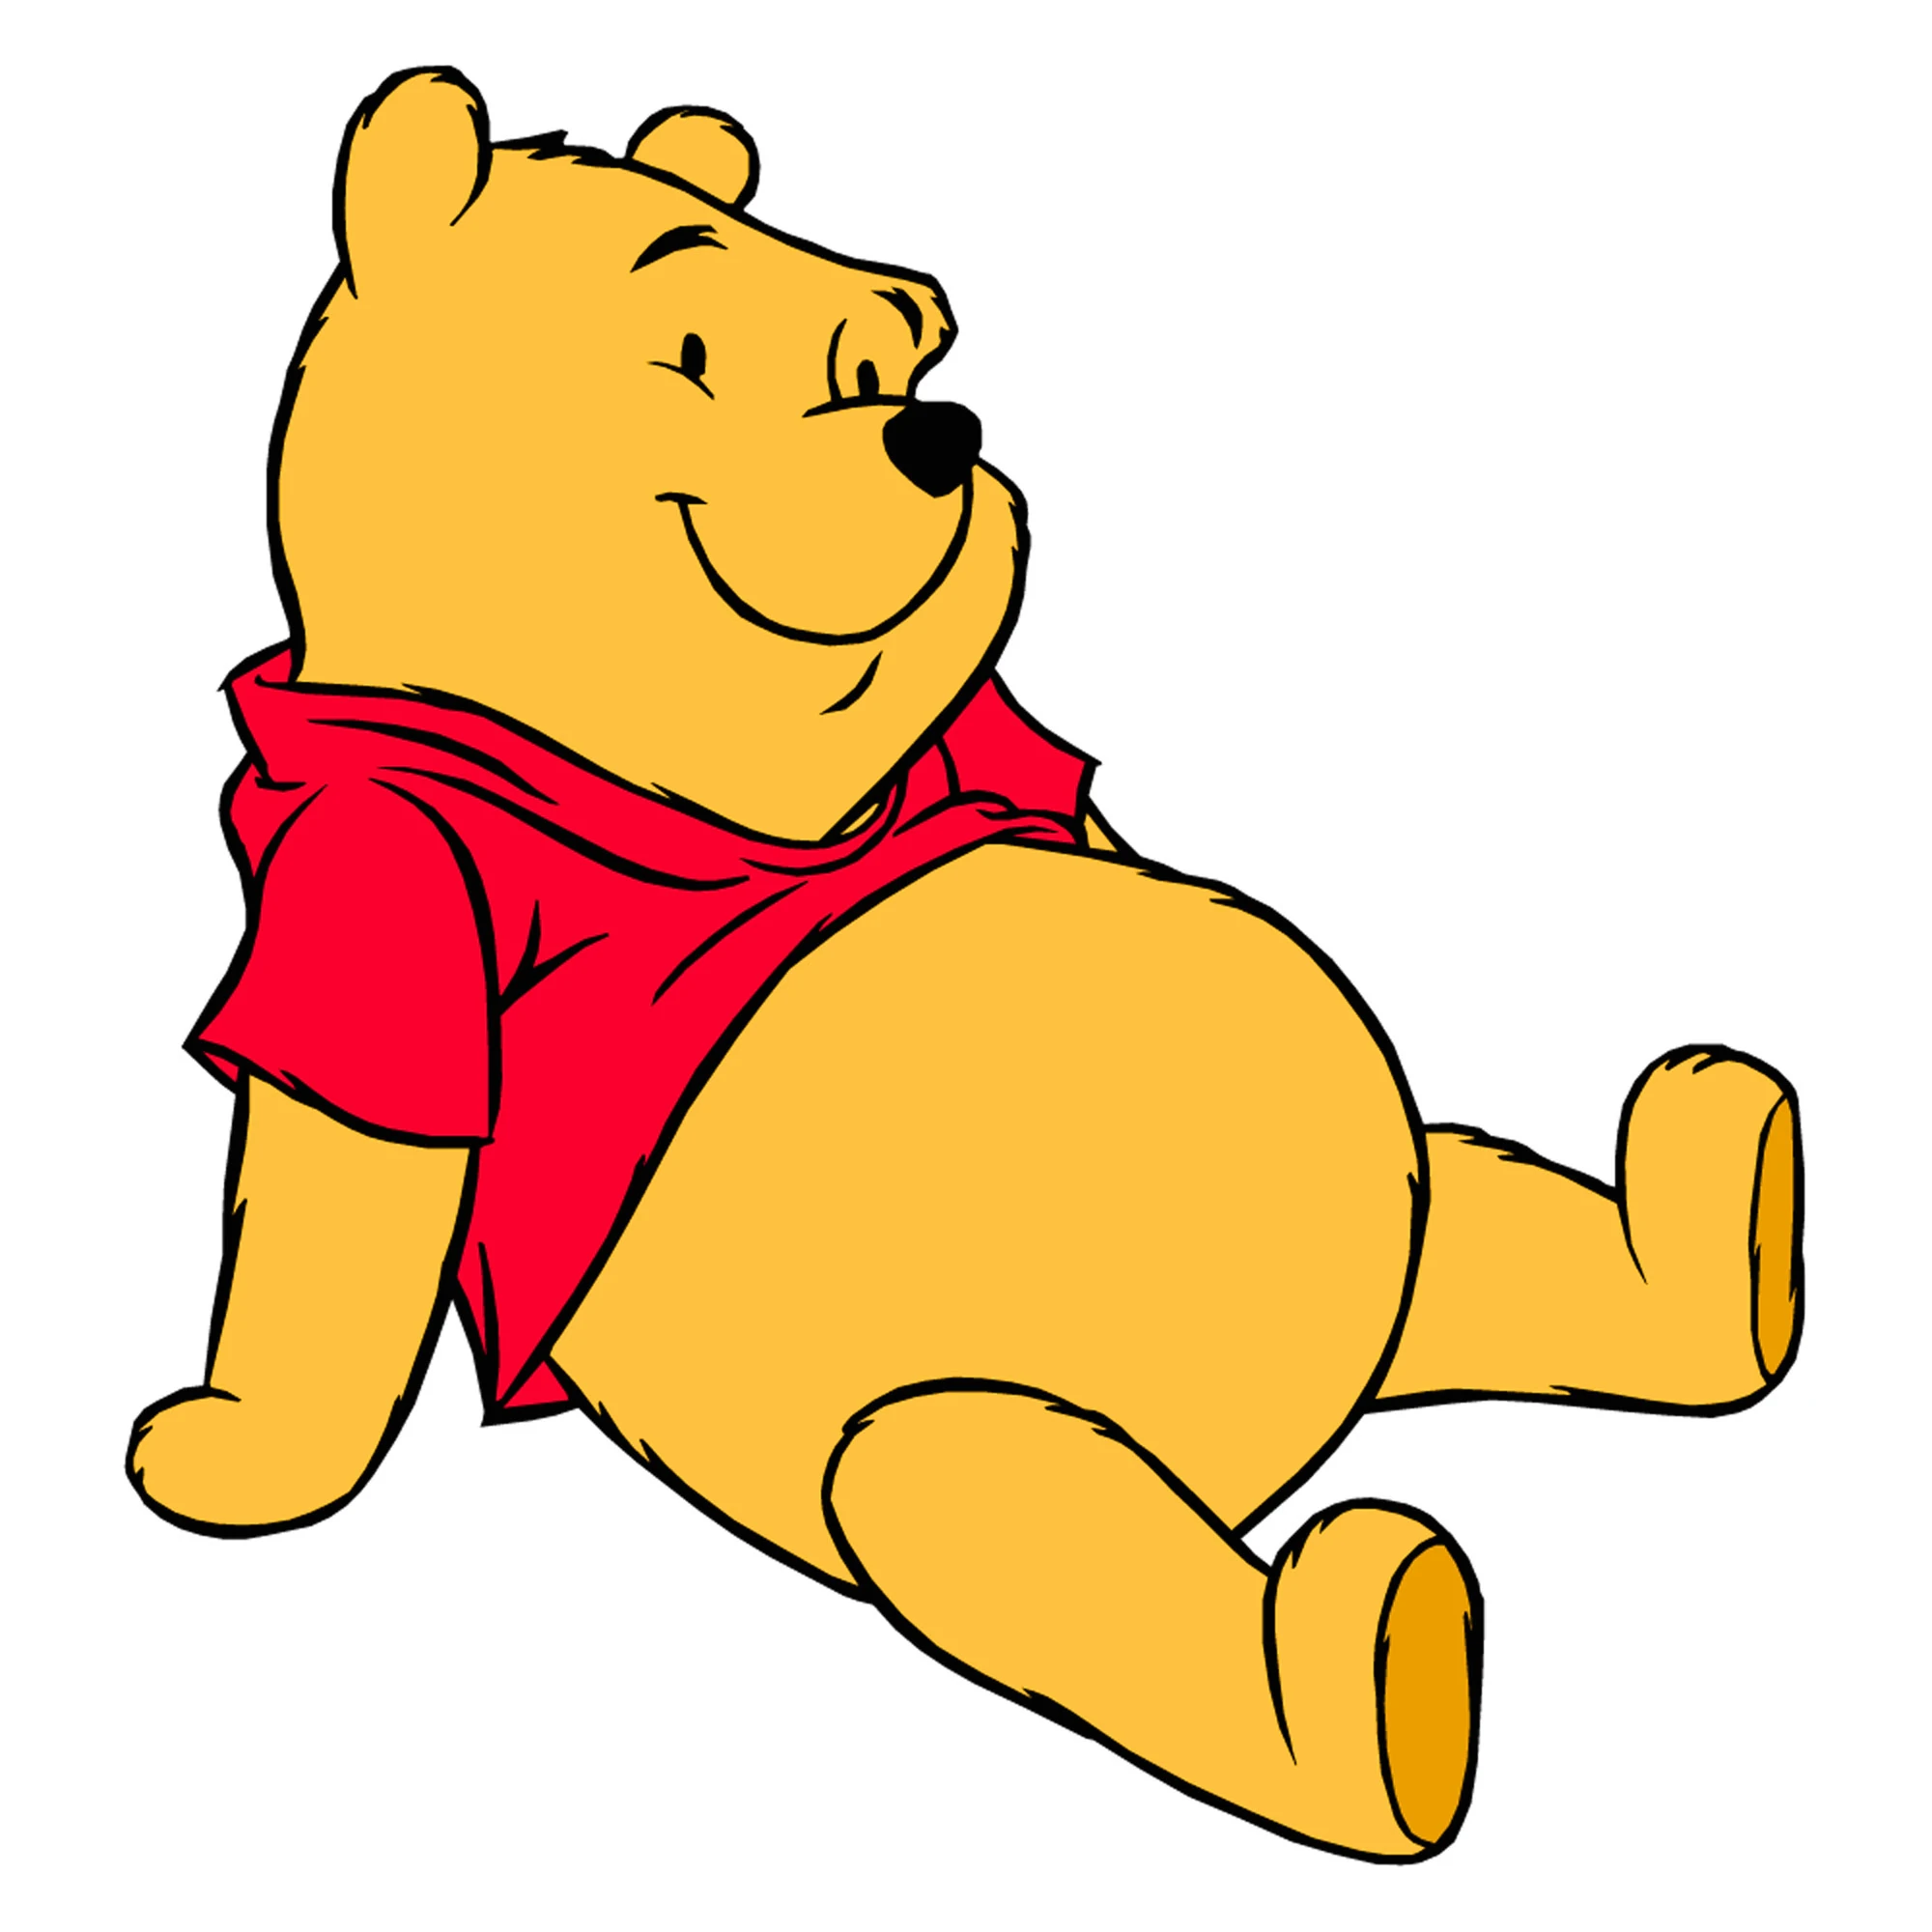 Winnie The Pooh là một nhân vật trong câu chuyện của một nhà văn người Anh